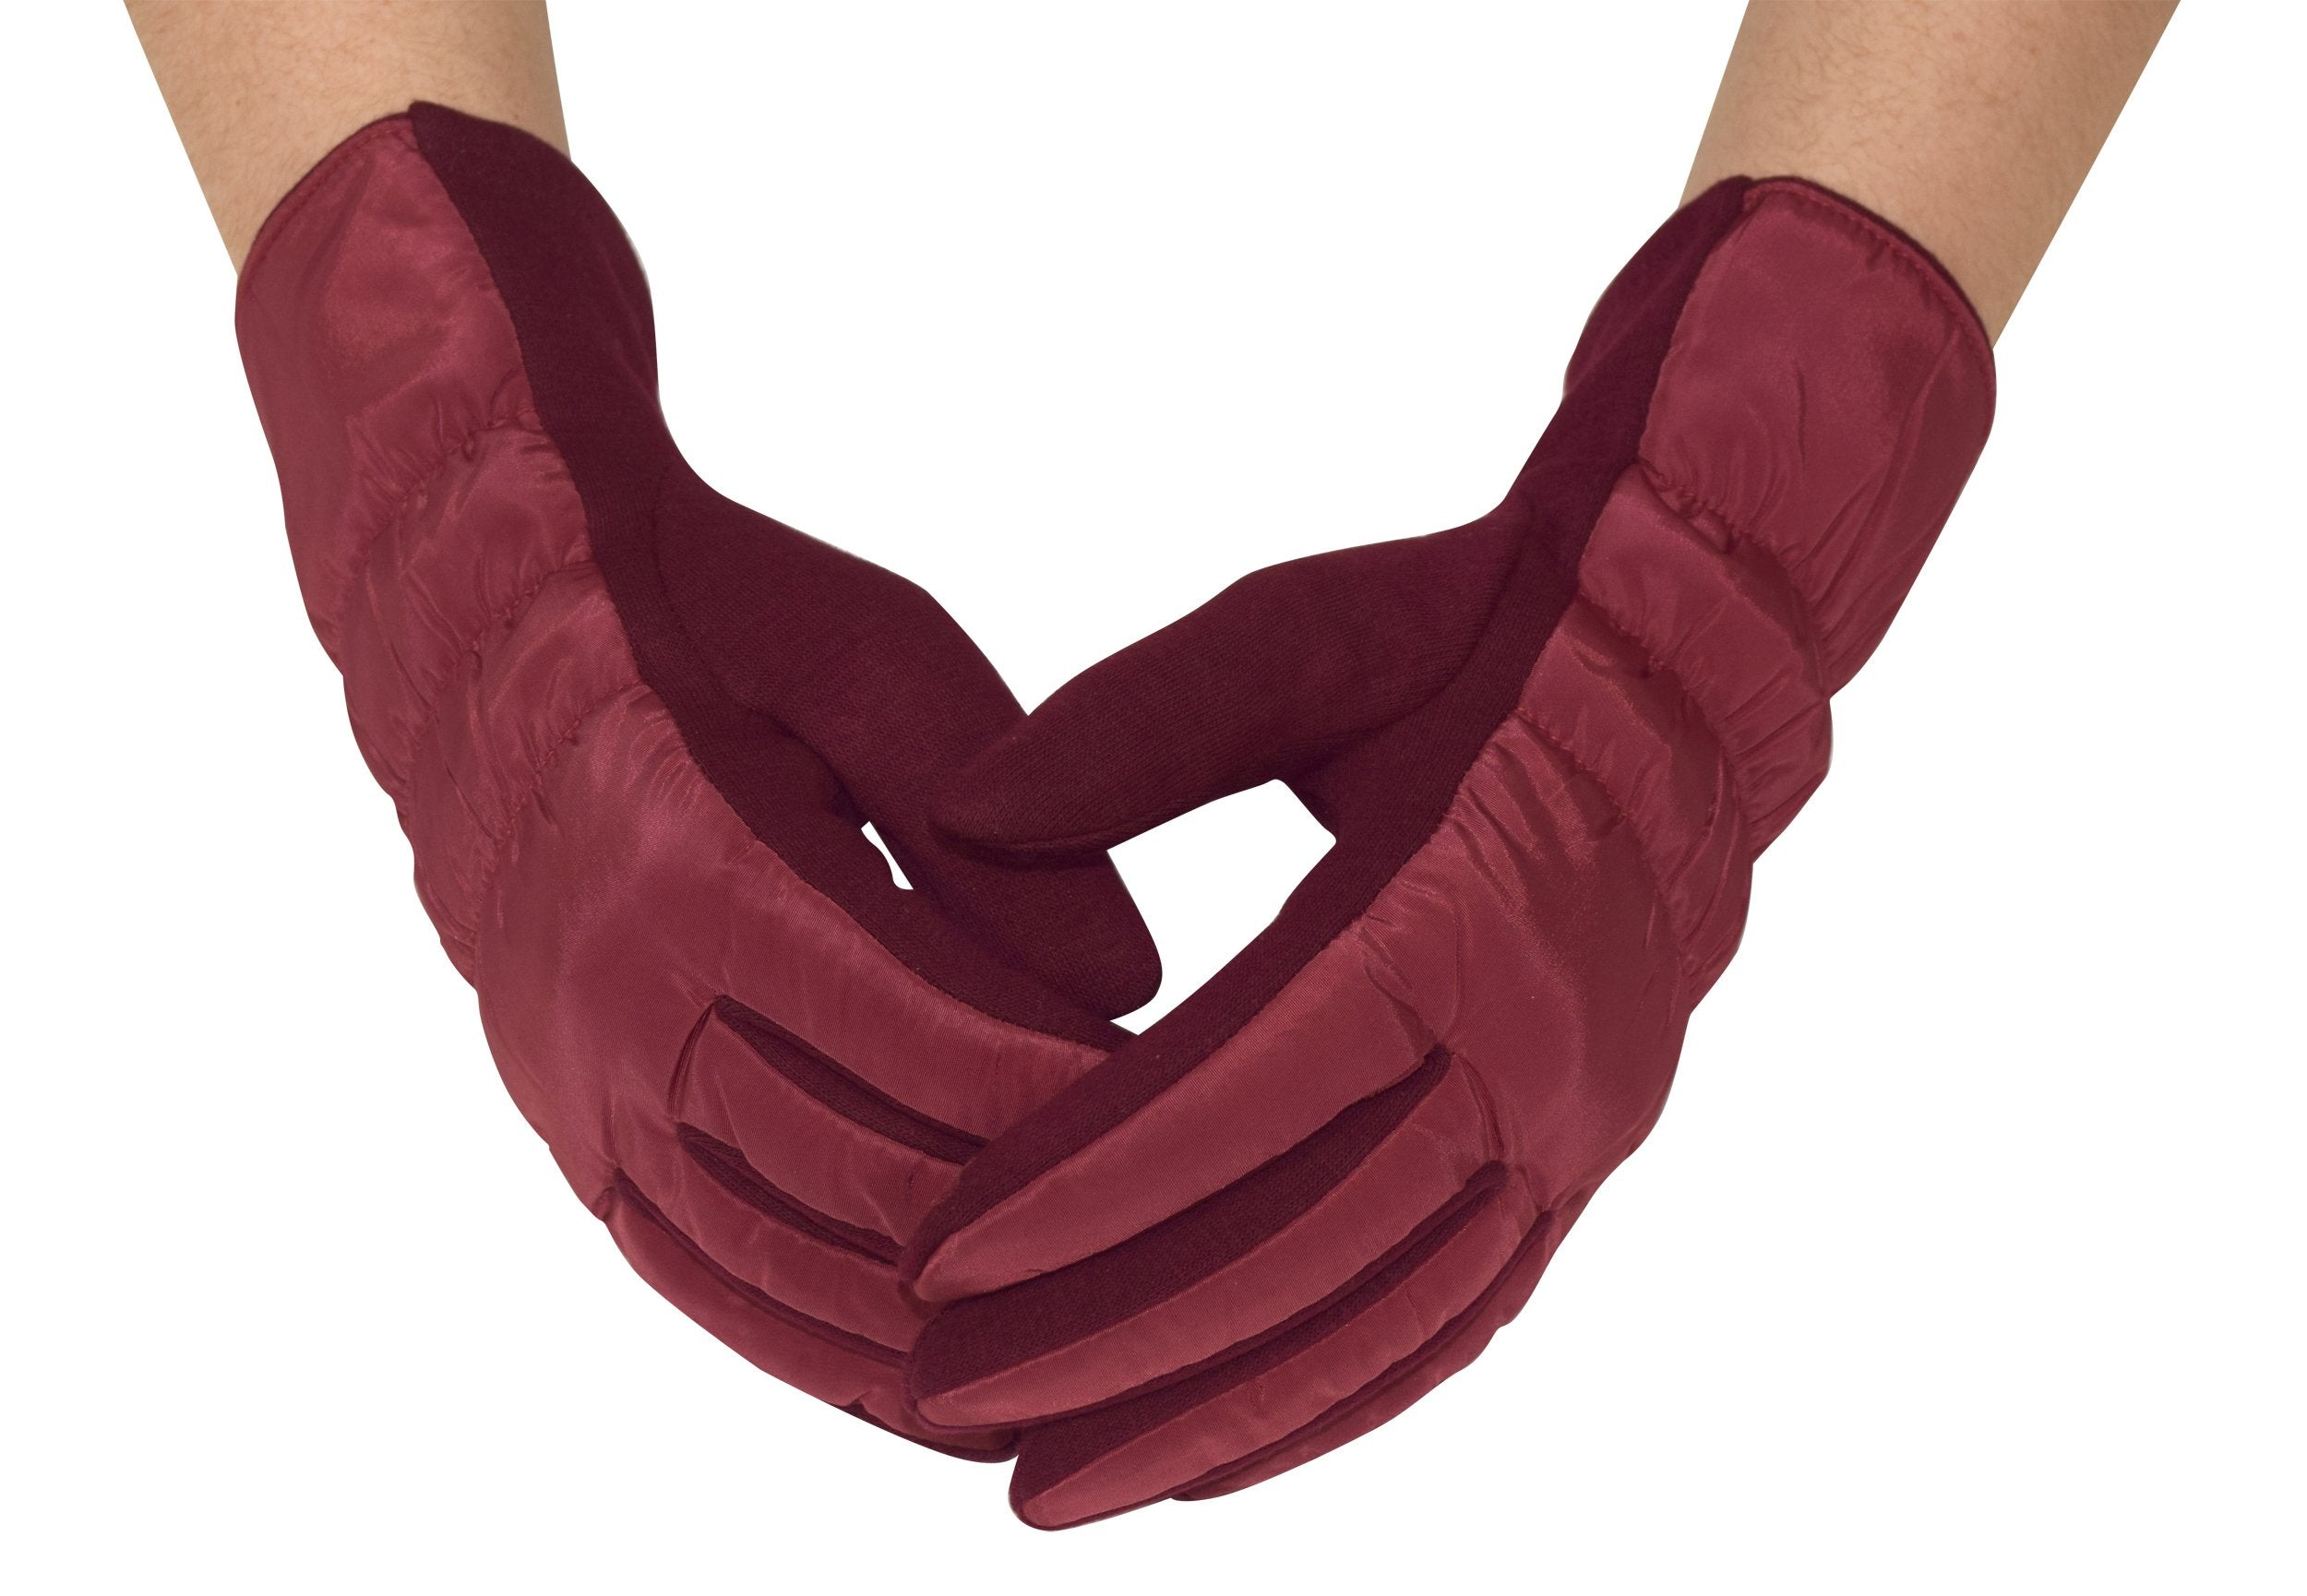 Fleece-Lined Winter Touchscreen Gloves